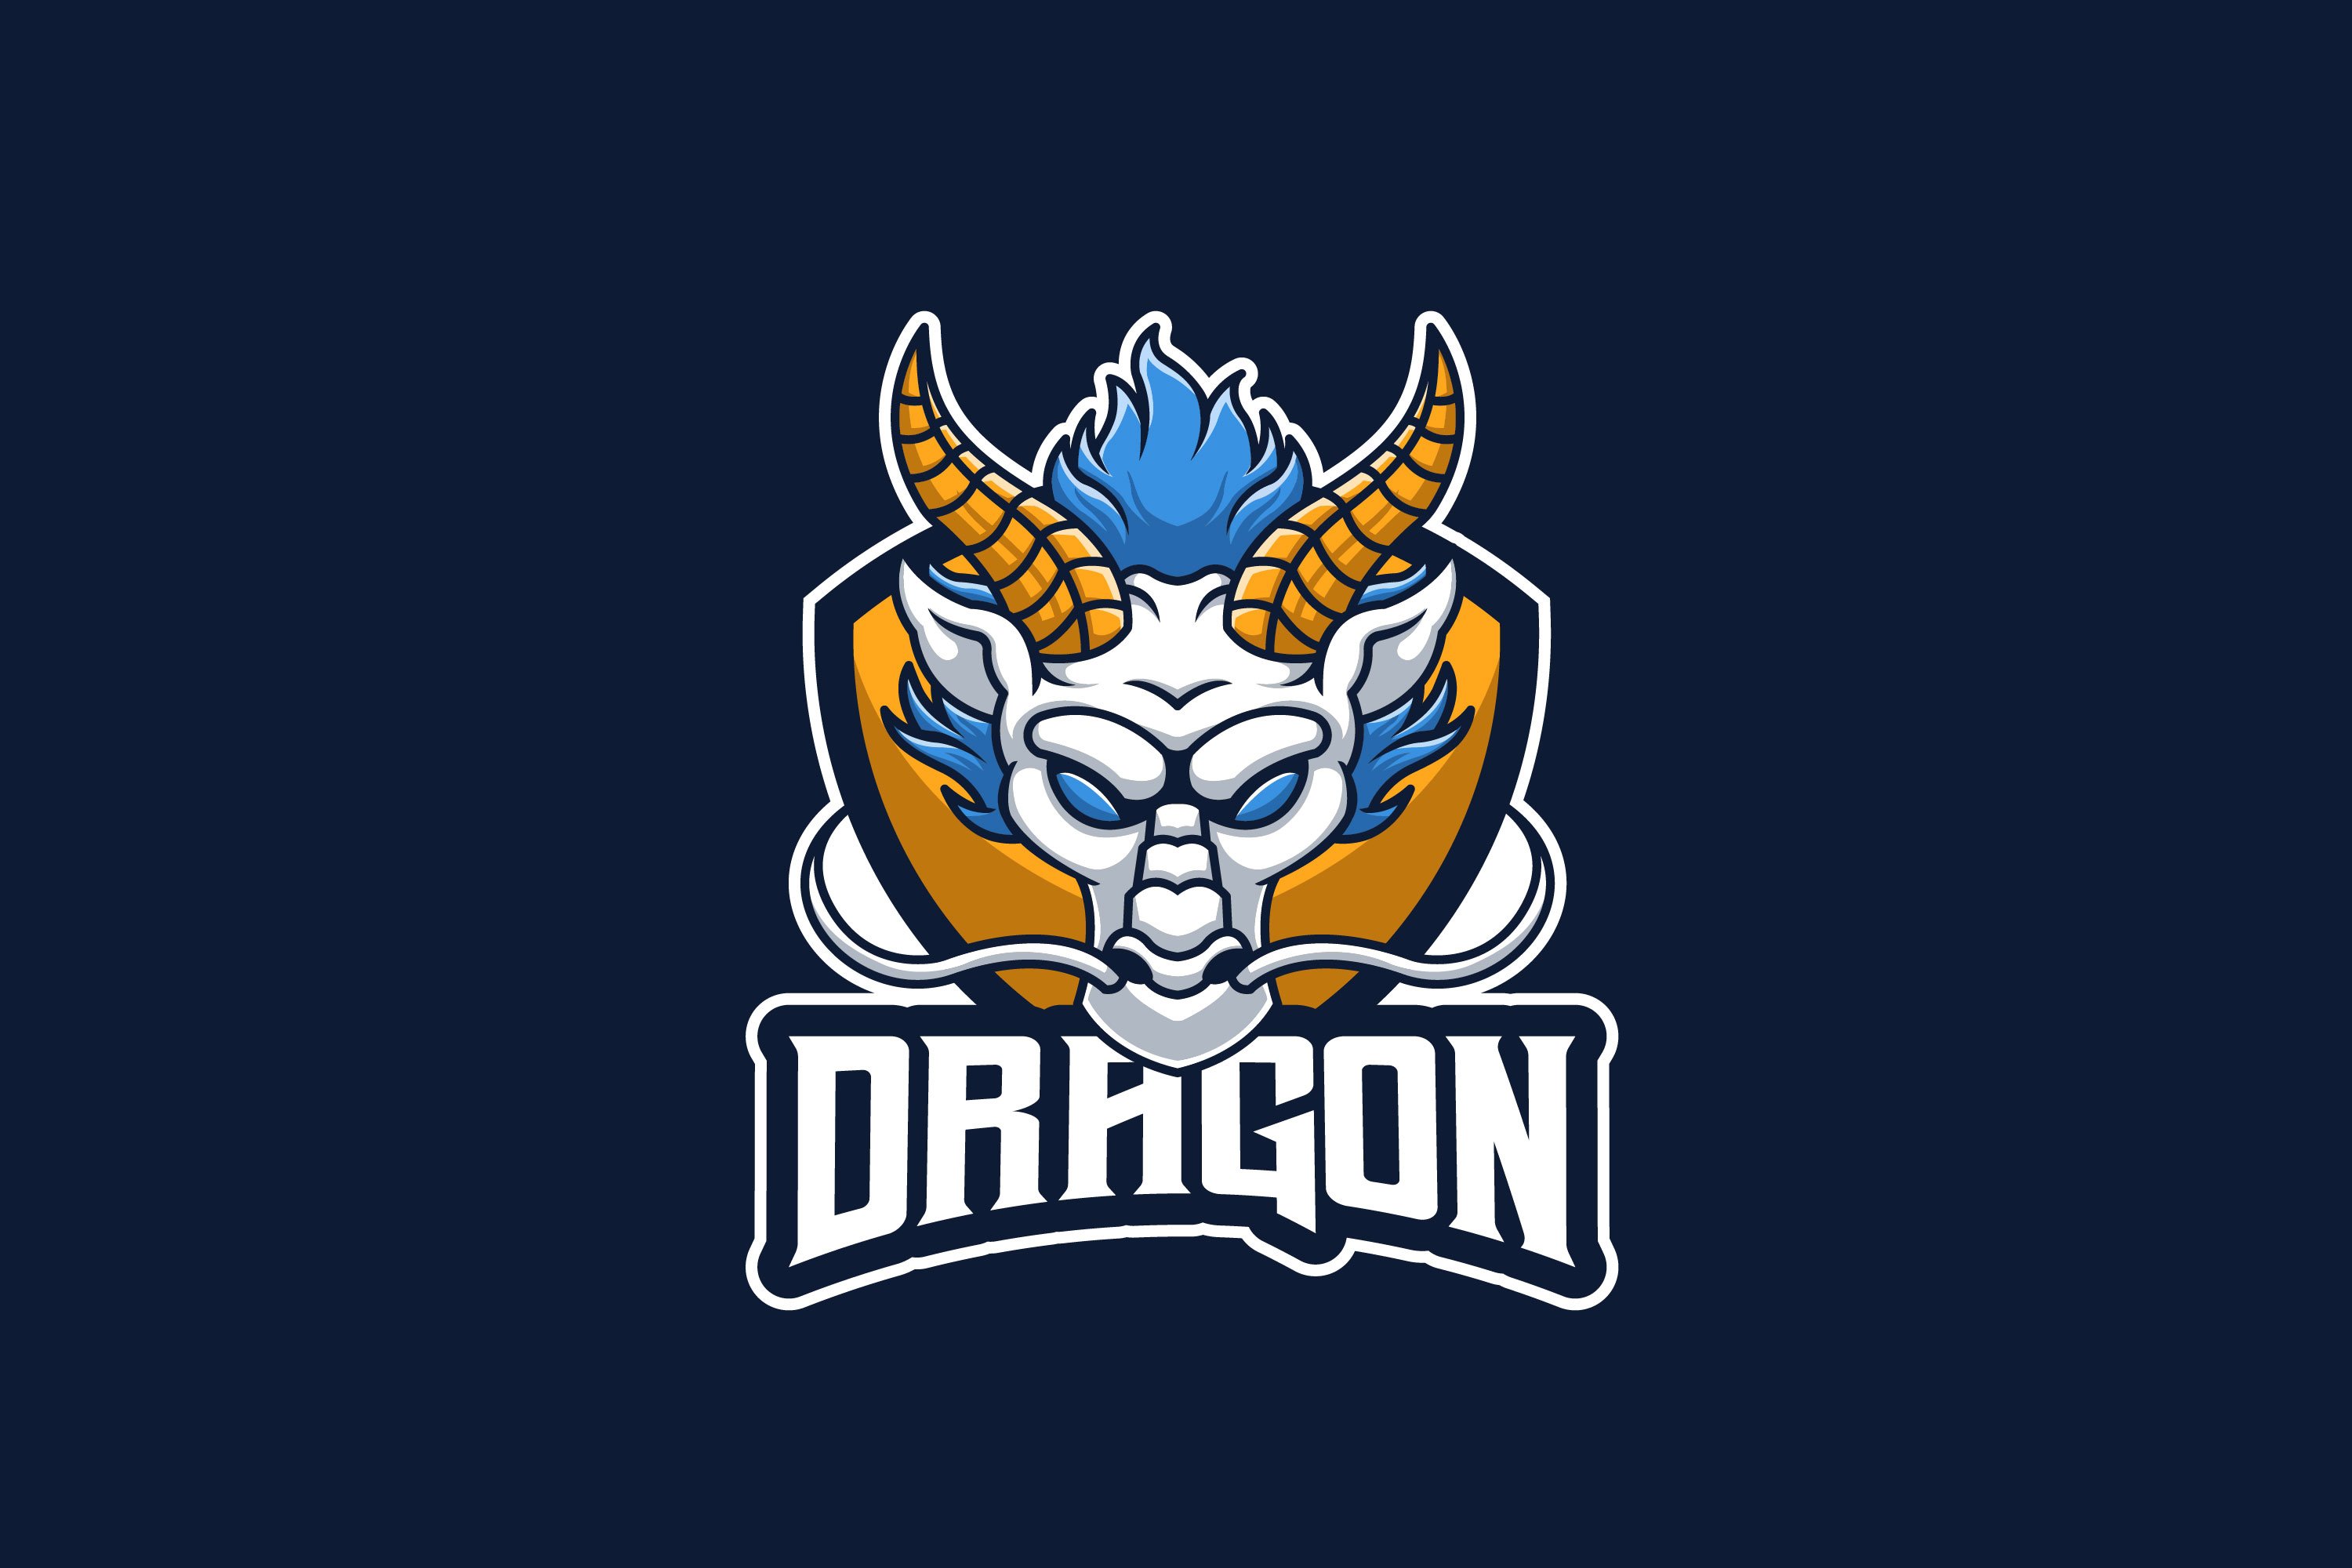 Dragon White Mascot Logo cover image.